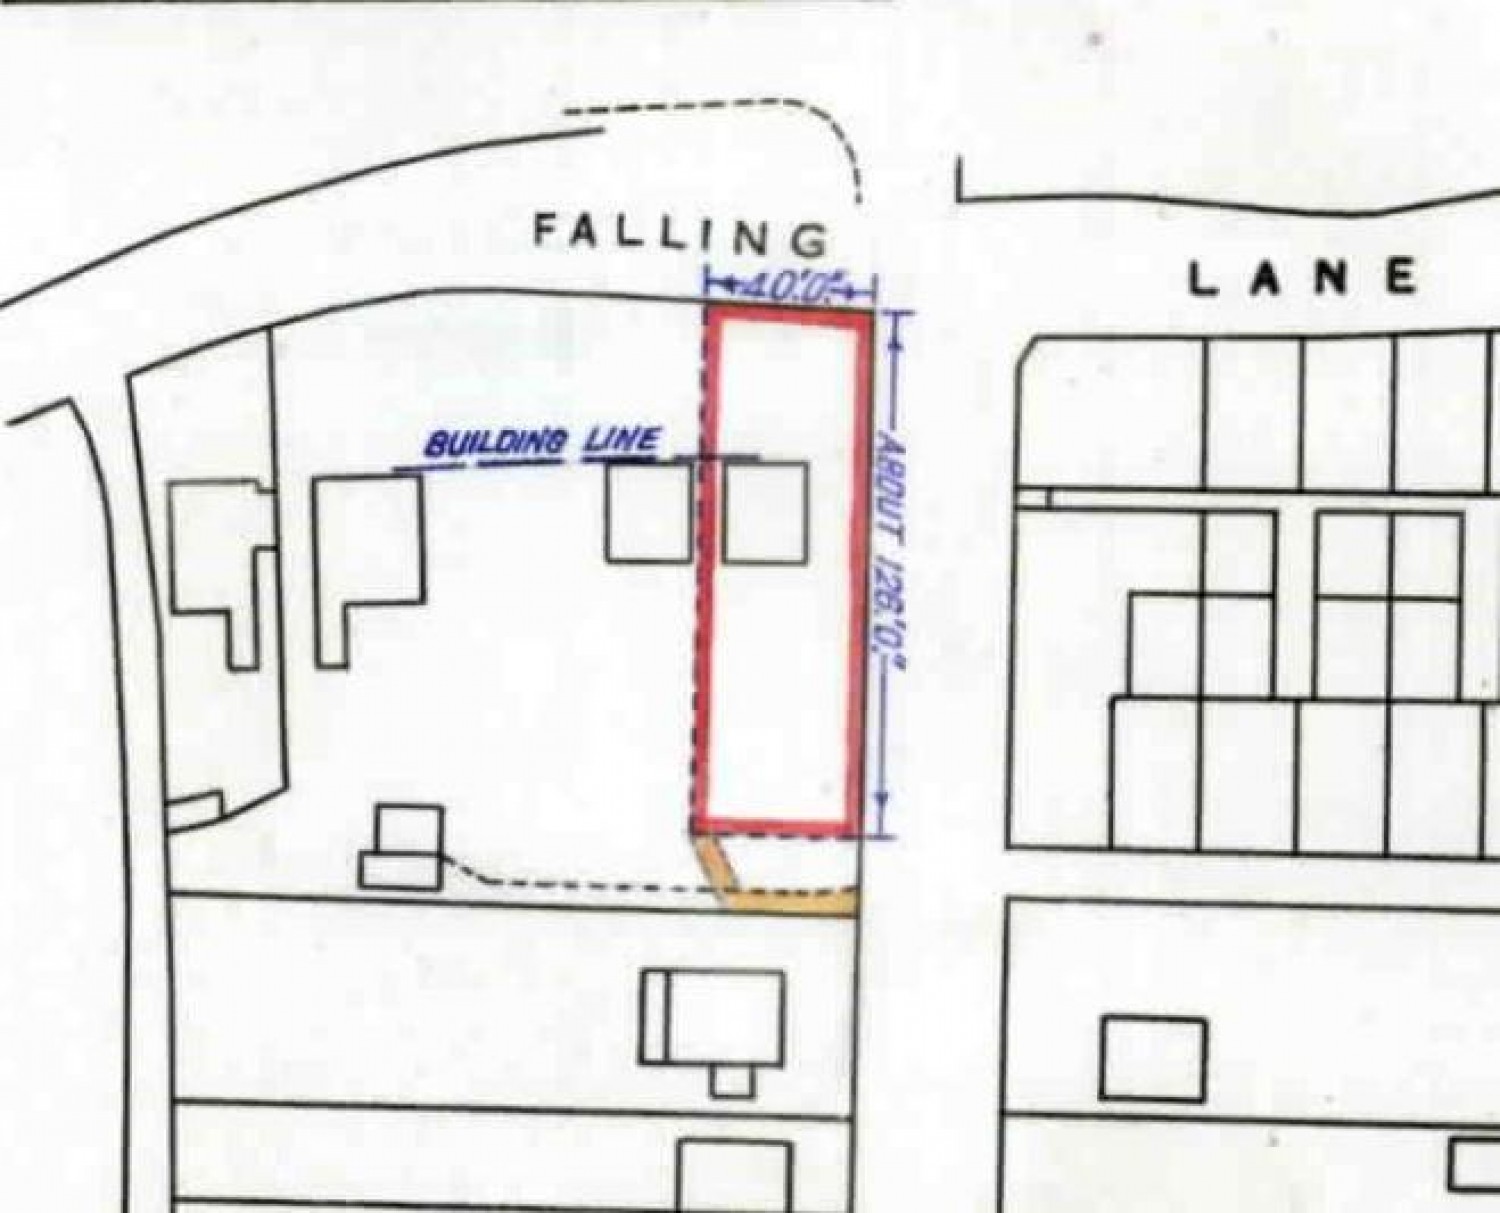 Falling Lane, West Drayton, Middlesex, UB7 8AB